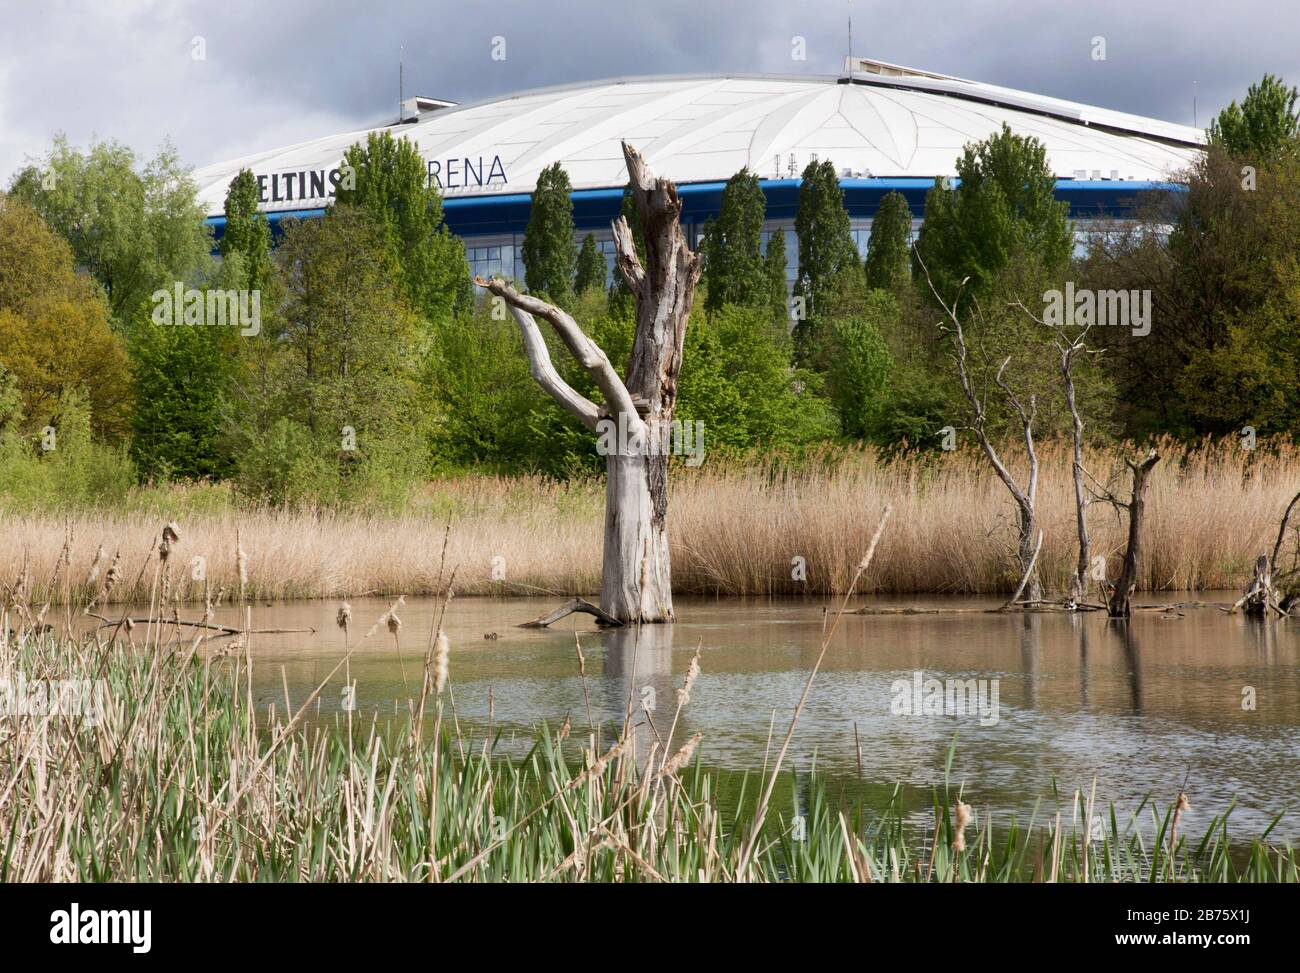 Tote Bäume stehen am 23.04.2017 in einem Biotop vor der Schalke 04 Arena in Gelsenkirchen. Vielleicht ist diese Szene ein Symbol für die ständige auf und ab von Schalke 04. [Automatisierte Übersetzung] Stockfoto